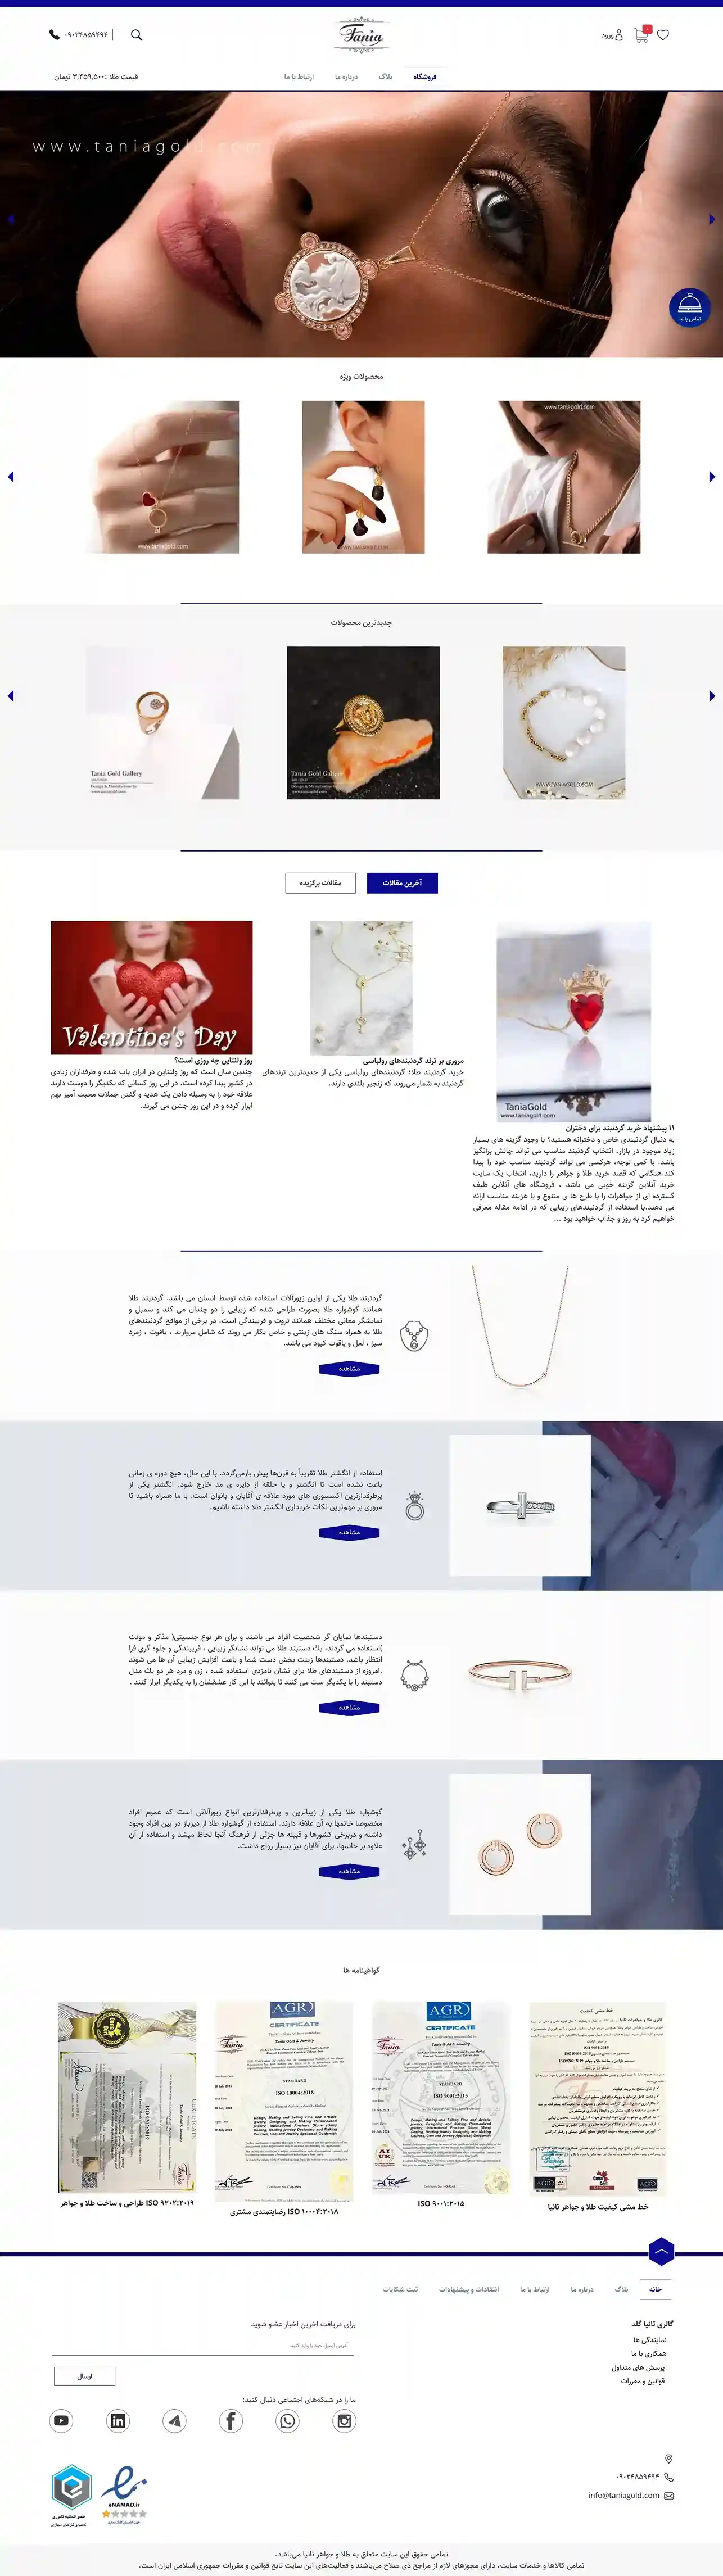 طراحی سایت فروشگاهی طلا و جواهر تانیا